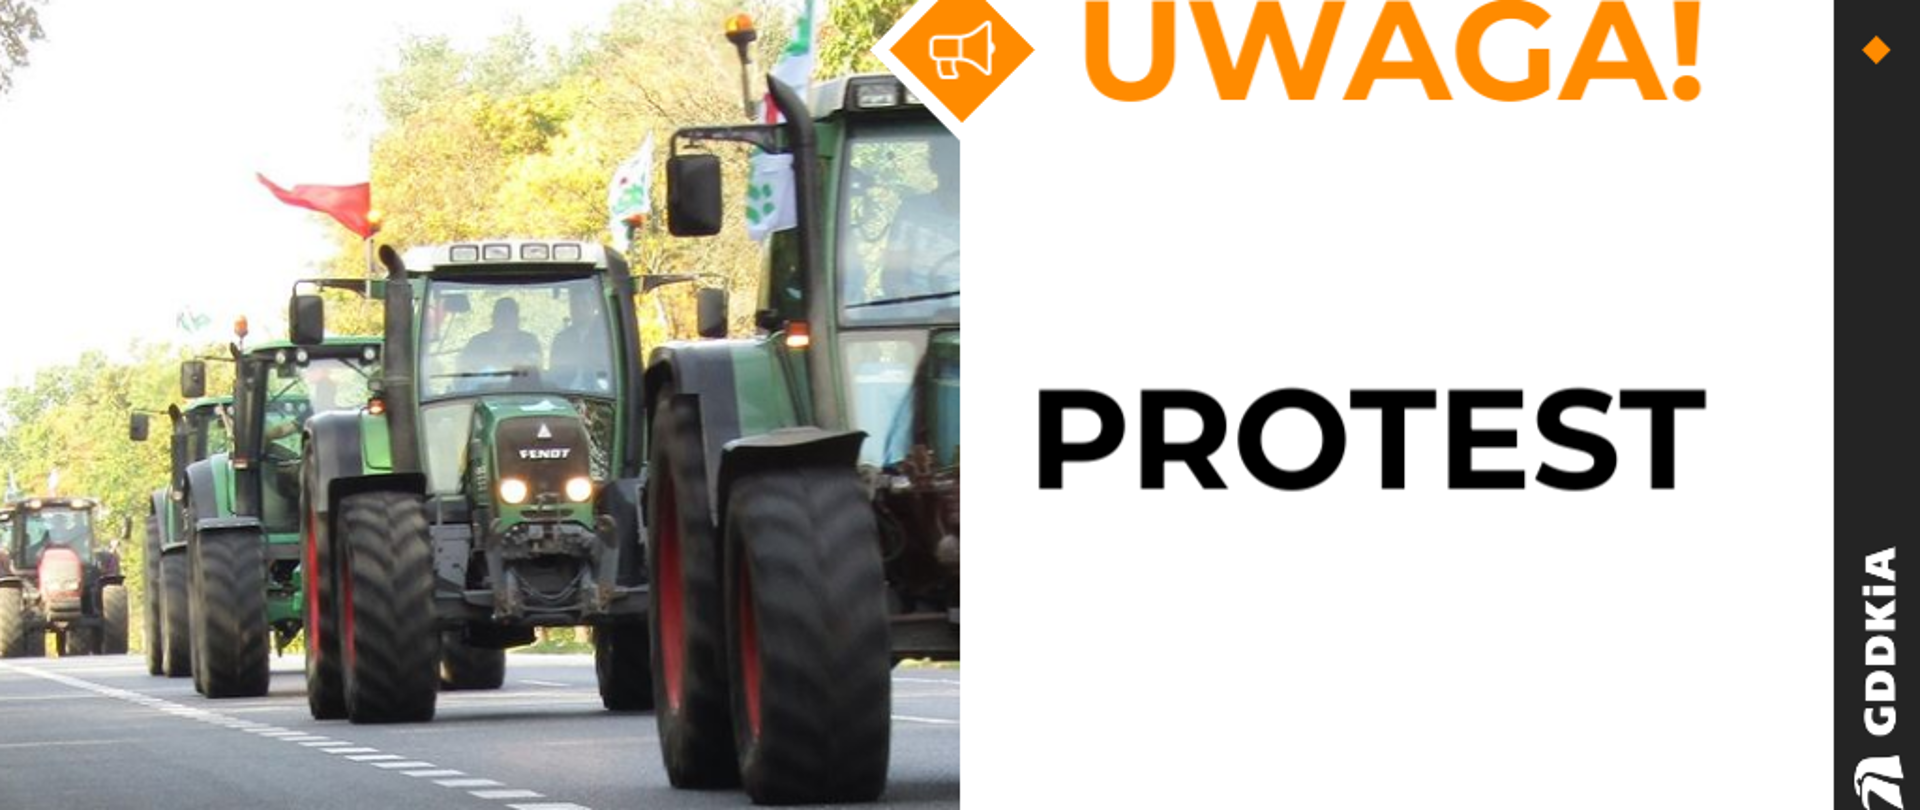 Protest rolników - ciągniki na drodze, napis "uwaga protest" i numer telefonu infolinii drogowej 